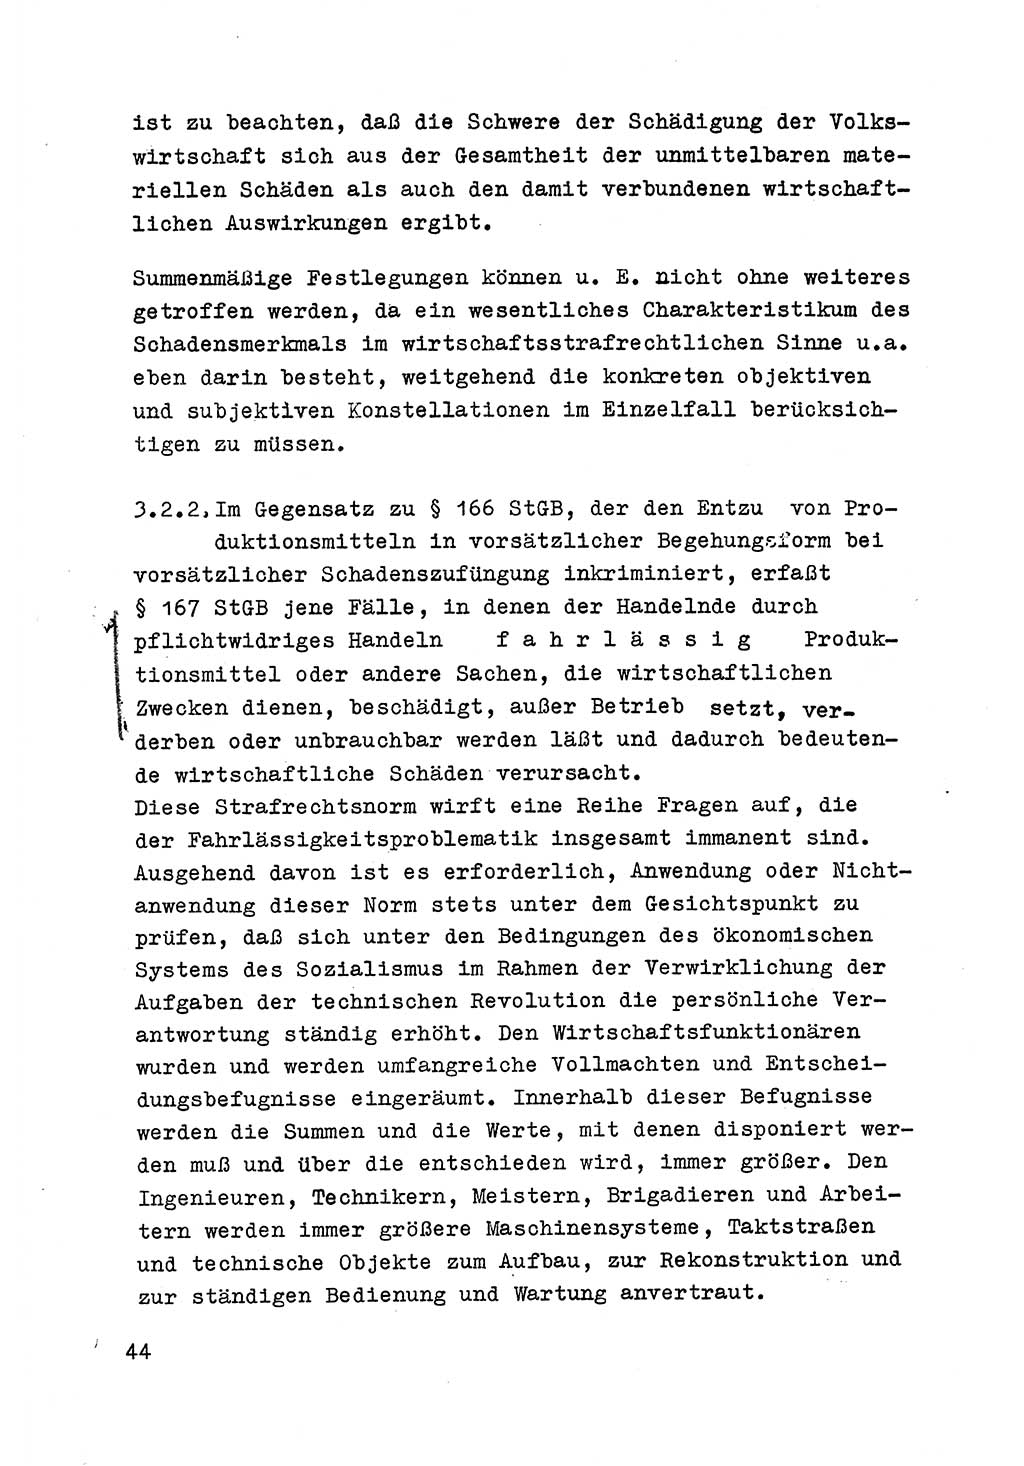 Strafrecht der DDR (Deutsche Demokratische Republik), Besonderer Teil, Lehrmaterial, Heft 6 1970, Seite 44 (Strafr. DDR BT Lehrmat. H. 6 1970, S. 44)